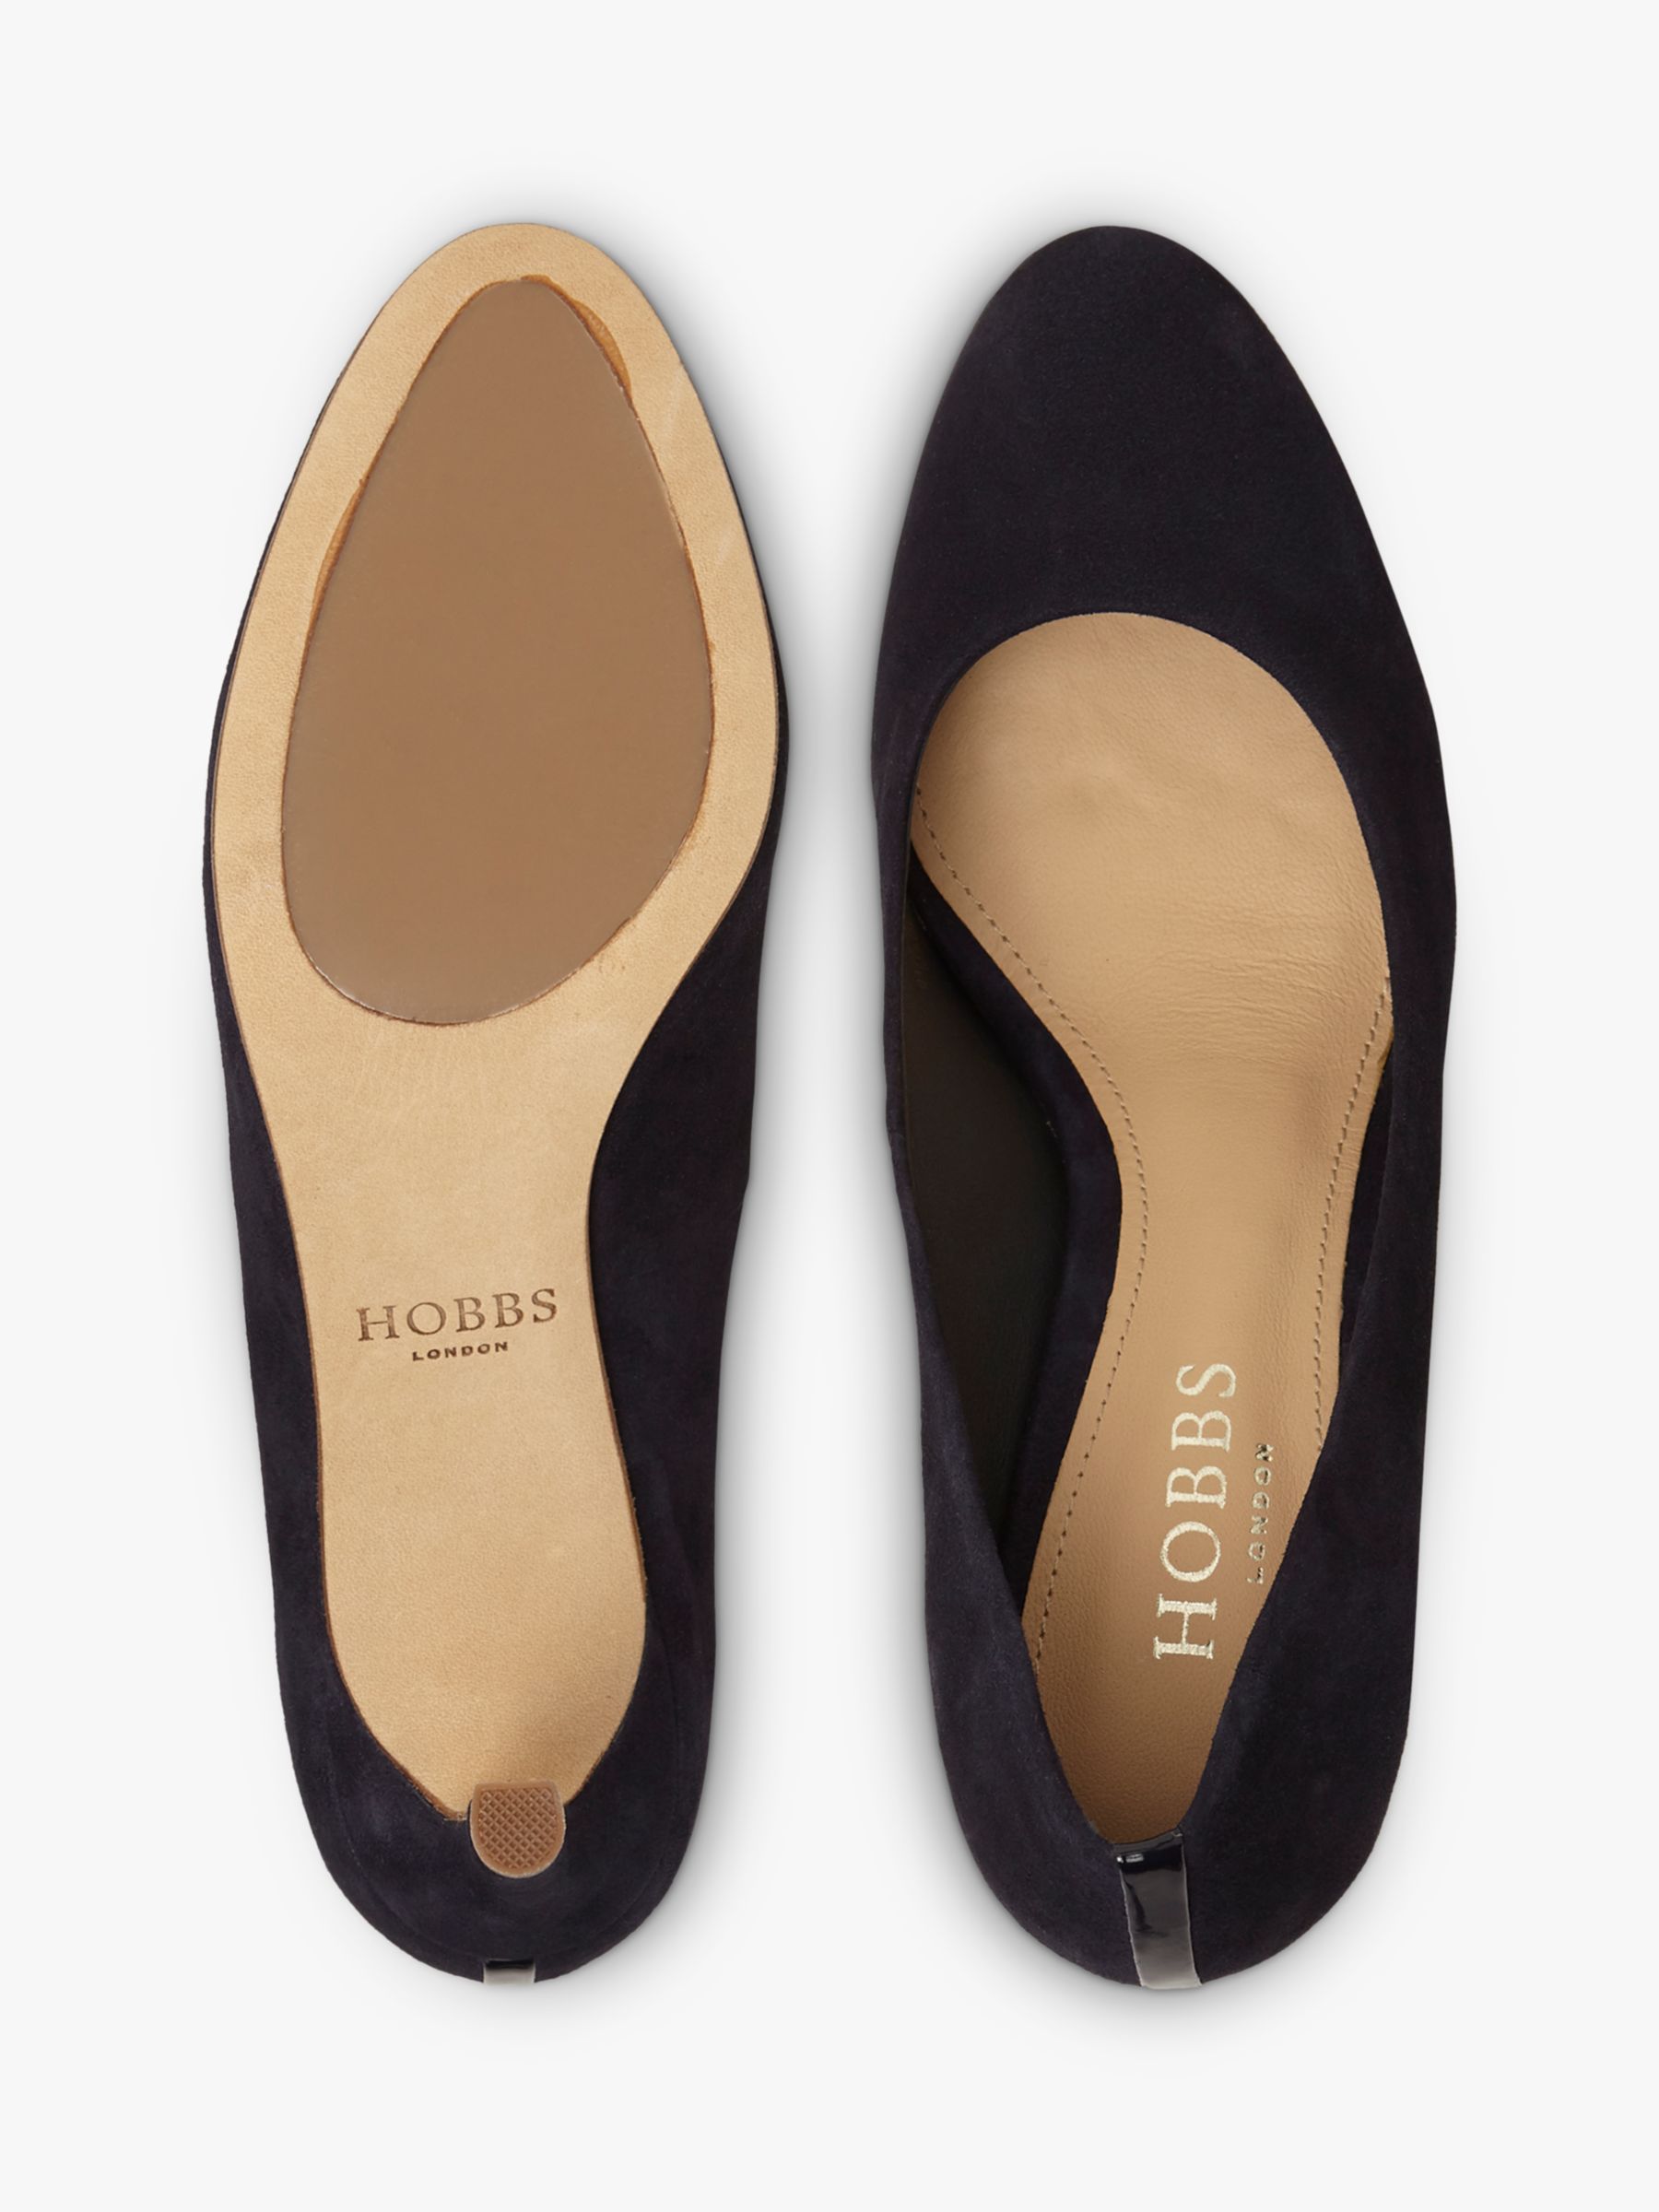 Hobbs Lizzie Suede Stiletto Heel Court Shoes, Navy, 3